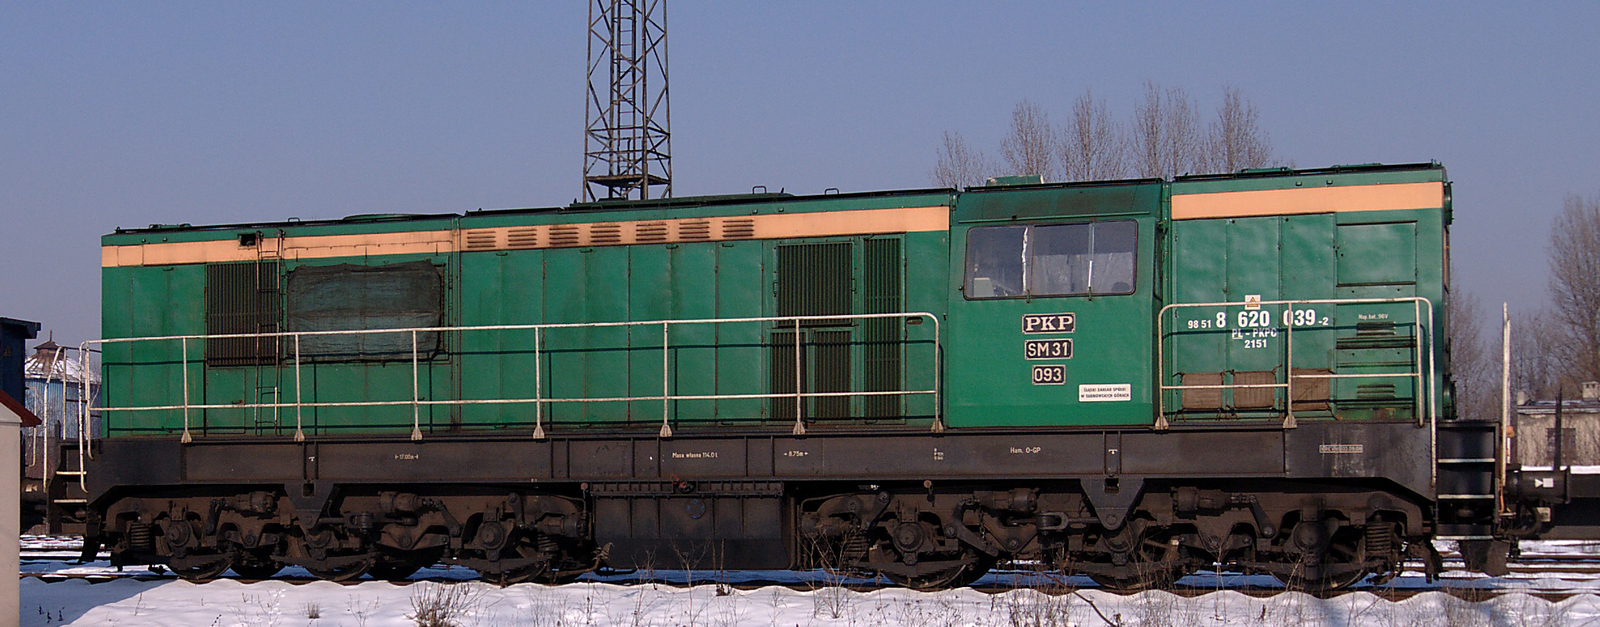 SM31-093 in January 2012 at Ruda Slaska station in Chebzie